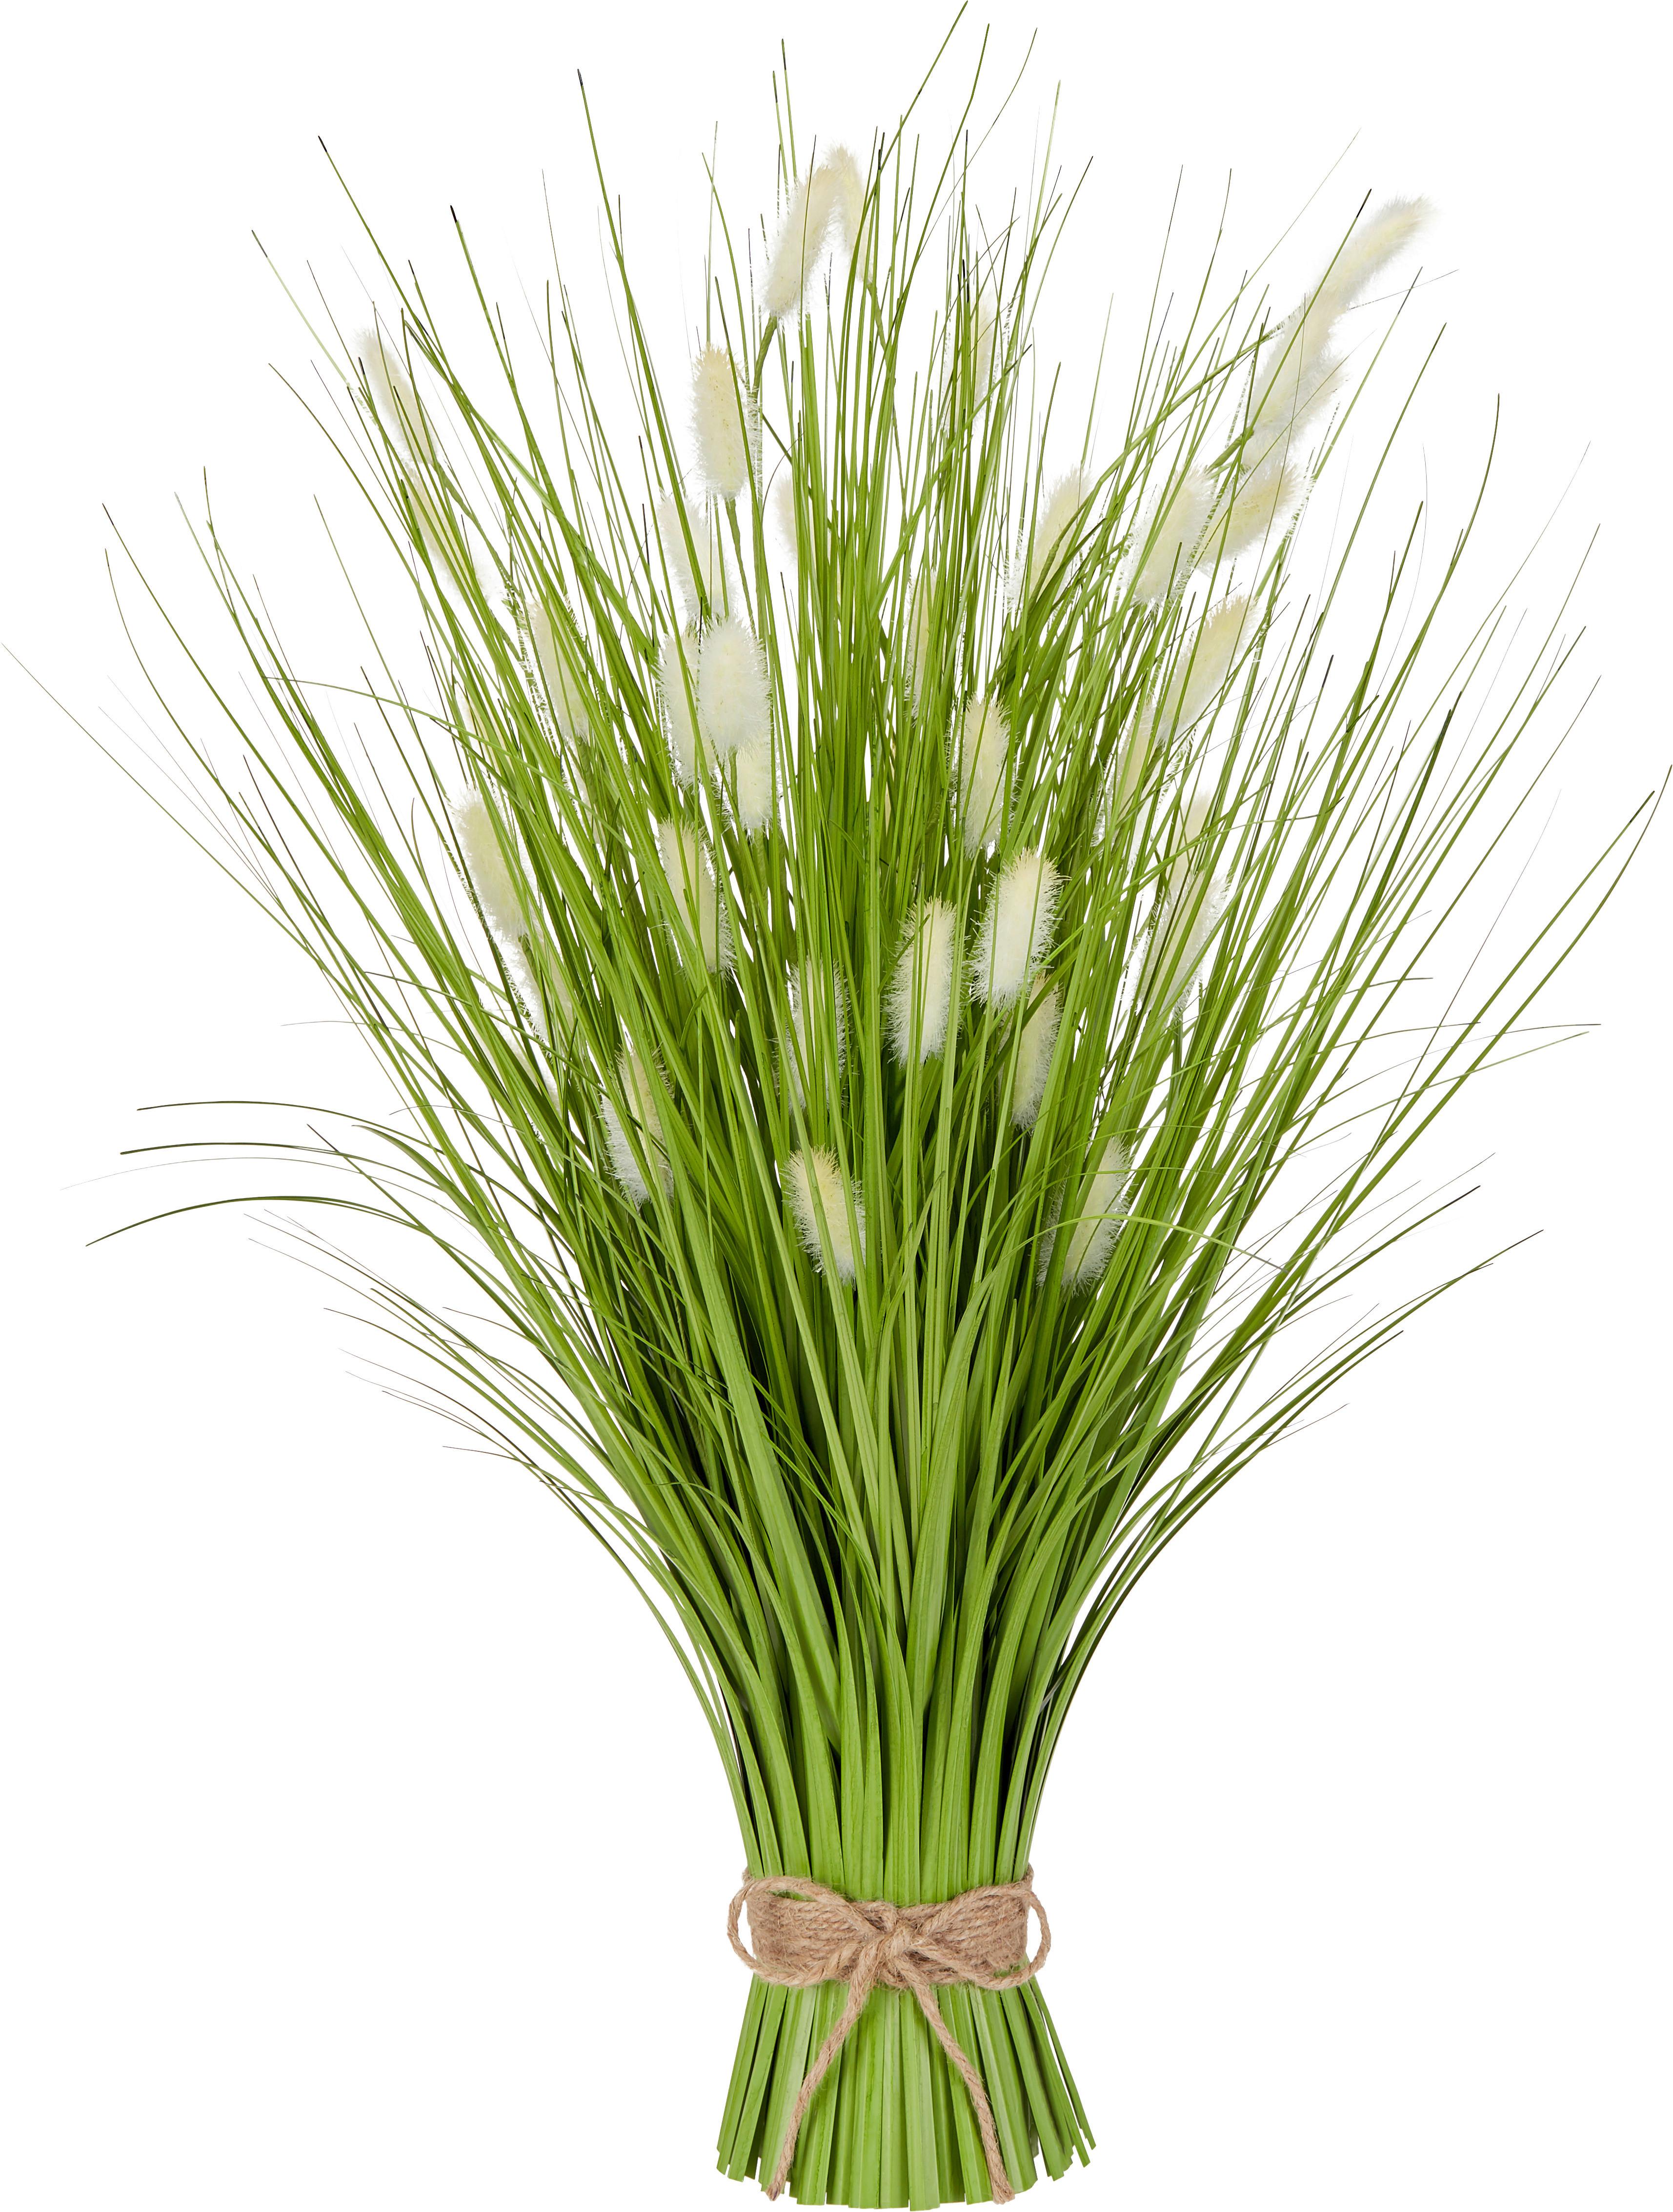 Kunstpflanze Grasbündel Beige L: 60 cm, Mariette - Beige/Grün, ROMANTIK / LANDHAUS, Kunststoff (25/60cm) - Luca Bessoni